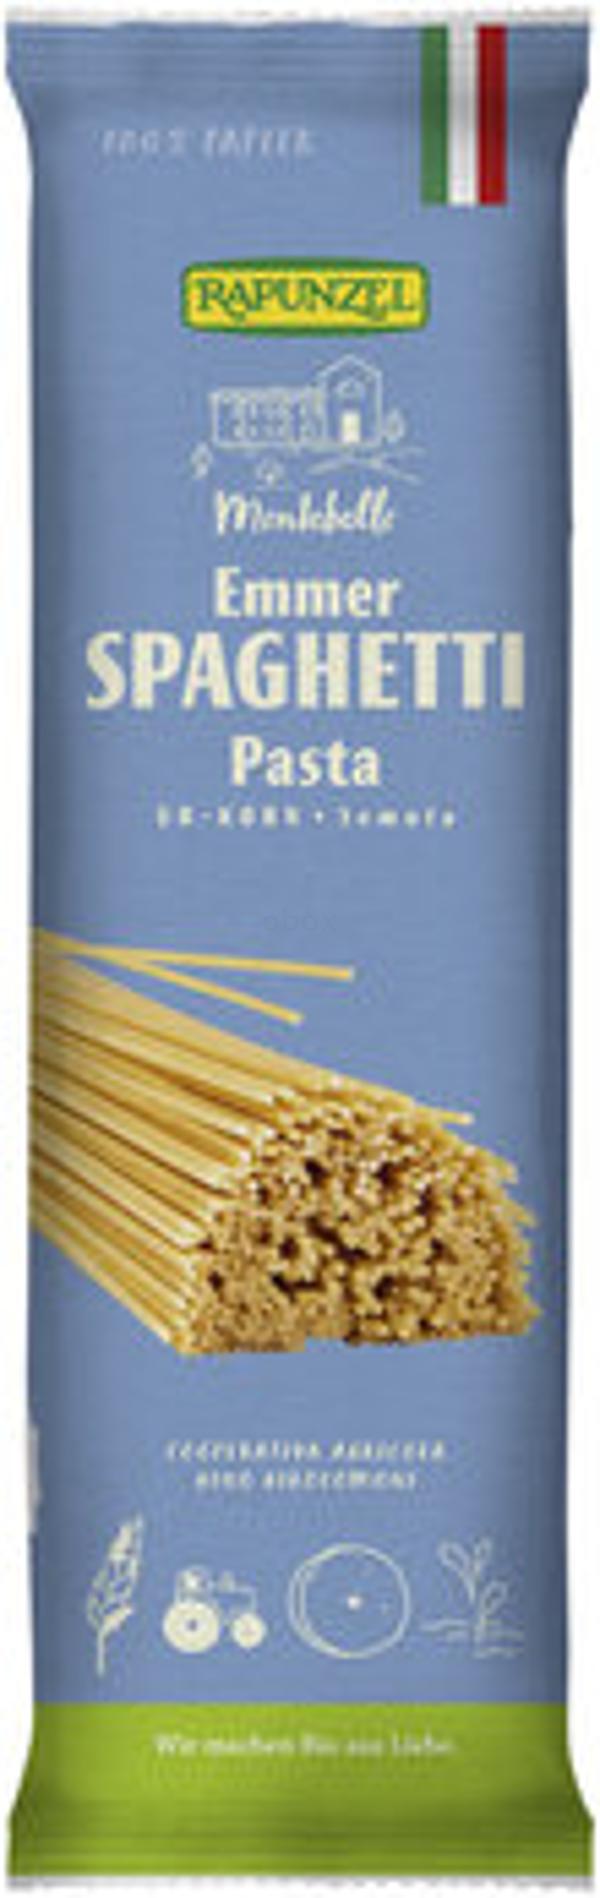 Produktfoto zu Emmer-Spaghetti Semola, 500 g